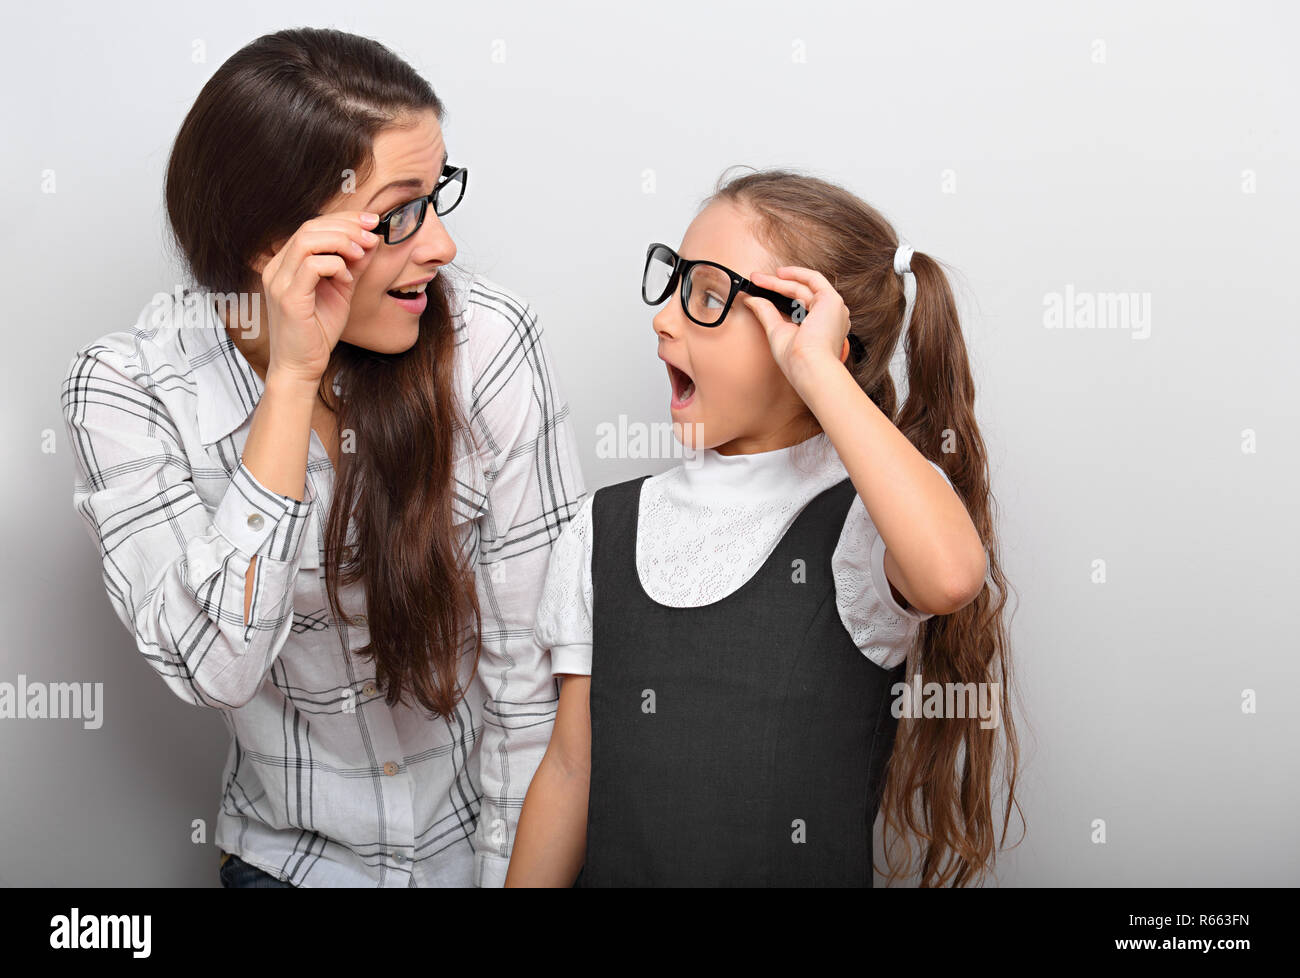 Gerne überraschende Mutter und Excite Kid Mode Brille suchen gegenseitig  mit geöffnetem Mund auf leere Raum Hintergrund Stockfotografie - Alamy